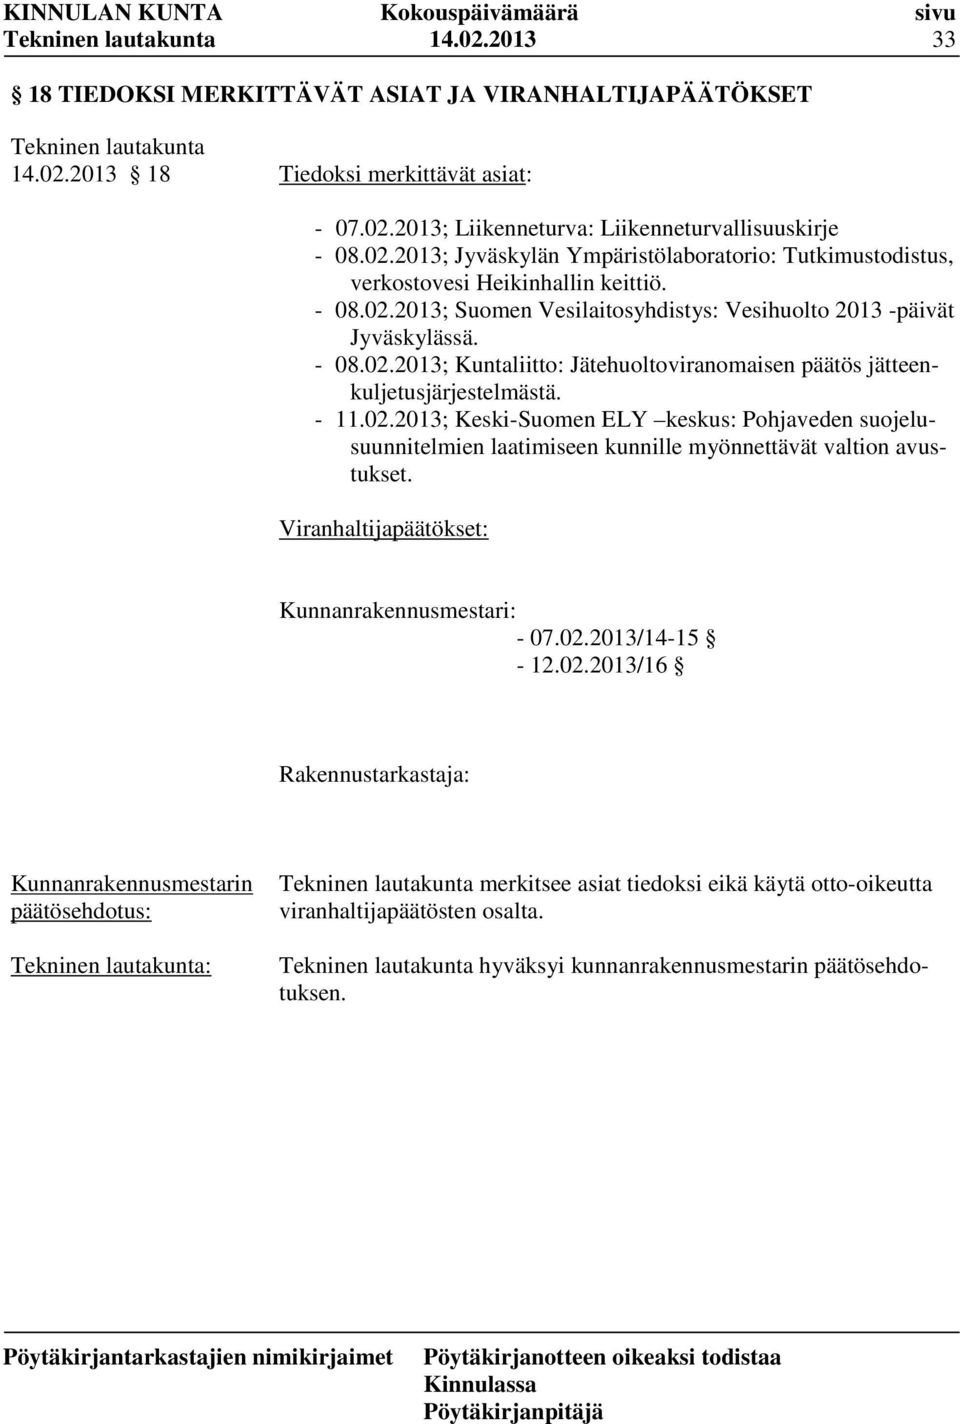 Viranhaltijapäätökset: Kunnanrakennusmestari: - 07.02.2013/14-15 - 12.02.2013/16 Rakennustarkastaja: : merkitsee asiat tiedoksi eikä käytä otto-oikeutta viranhaltijapäätösten osalta.